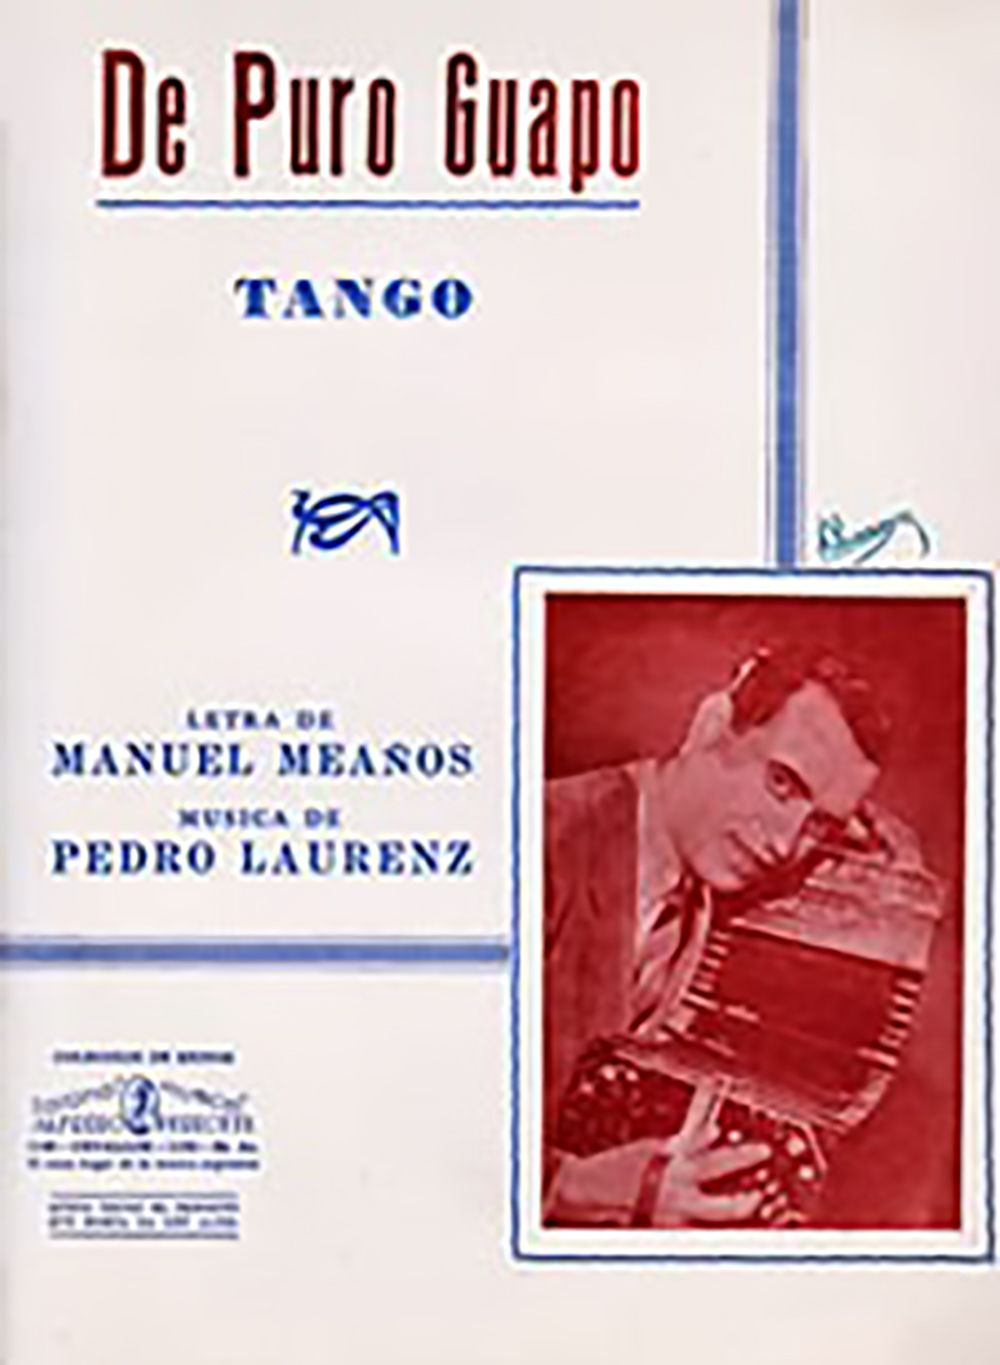 "De puro guapo", Argentine Tango music sheet cover.